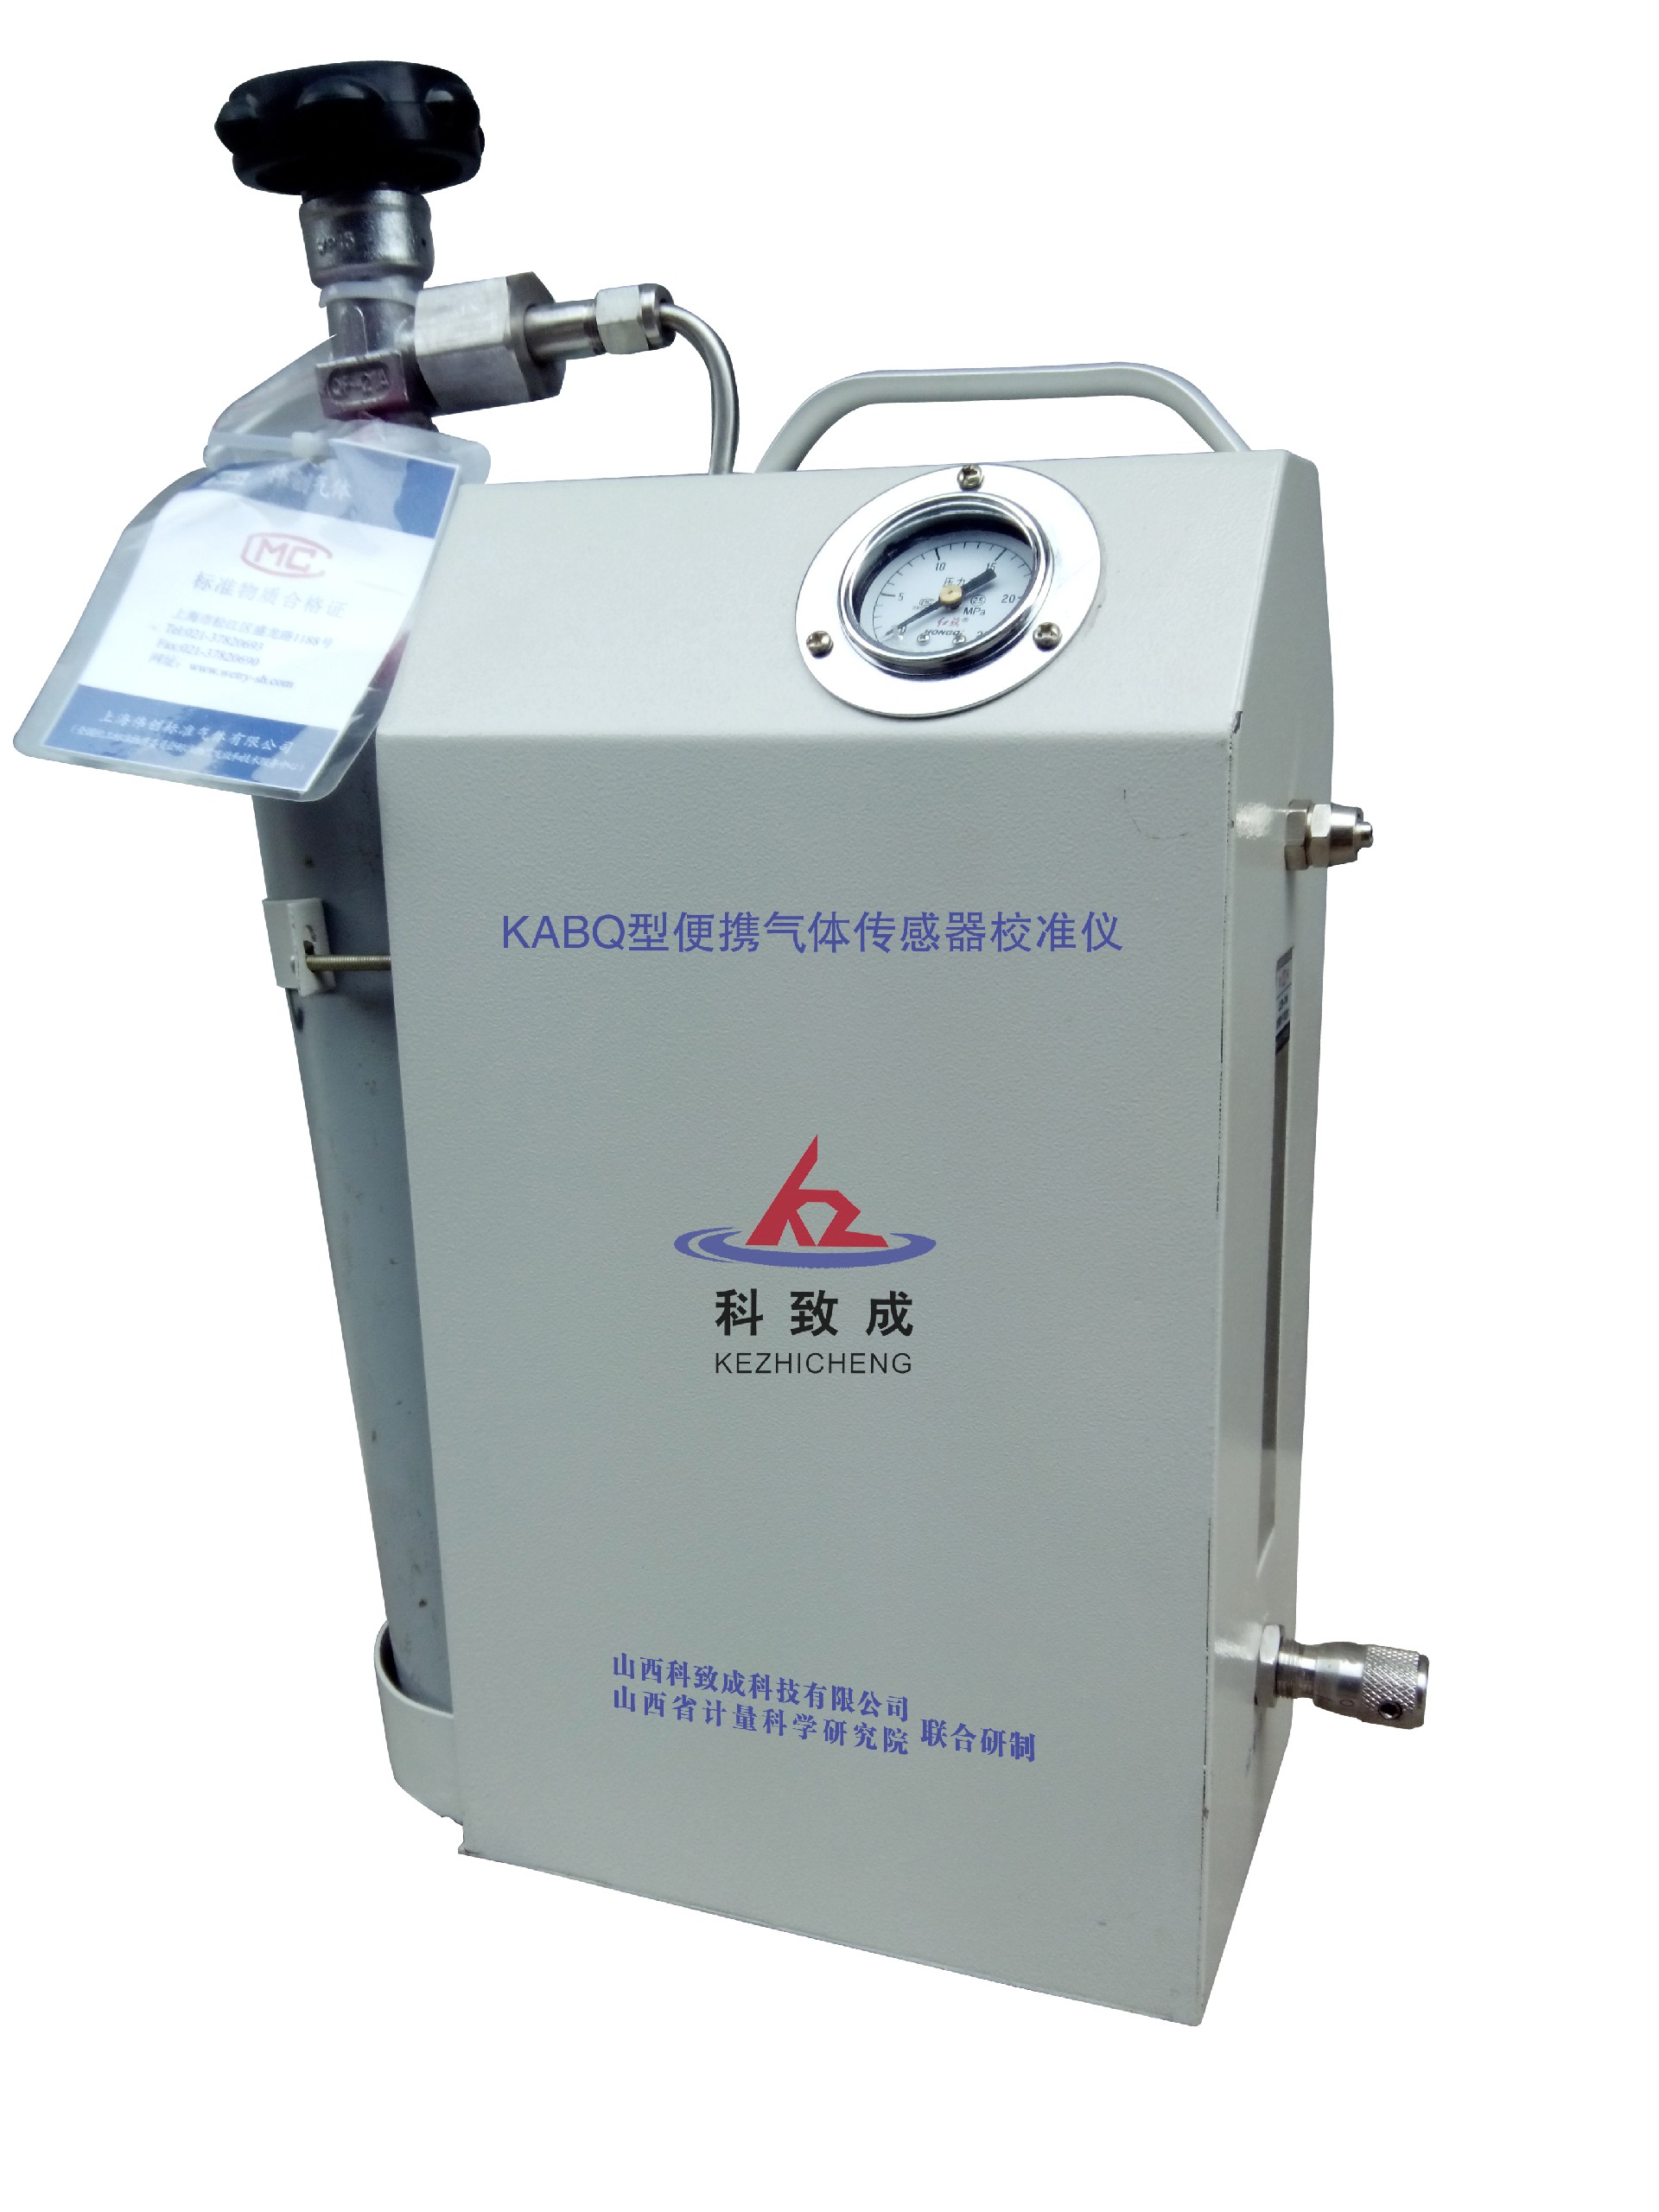 衡水KABQ型便携气体传感器校准仪